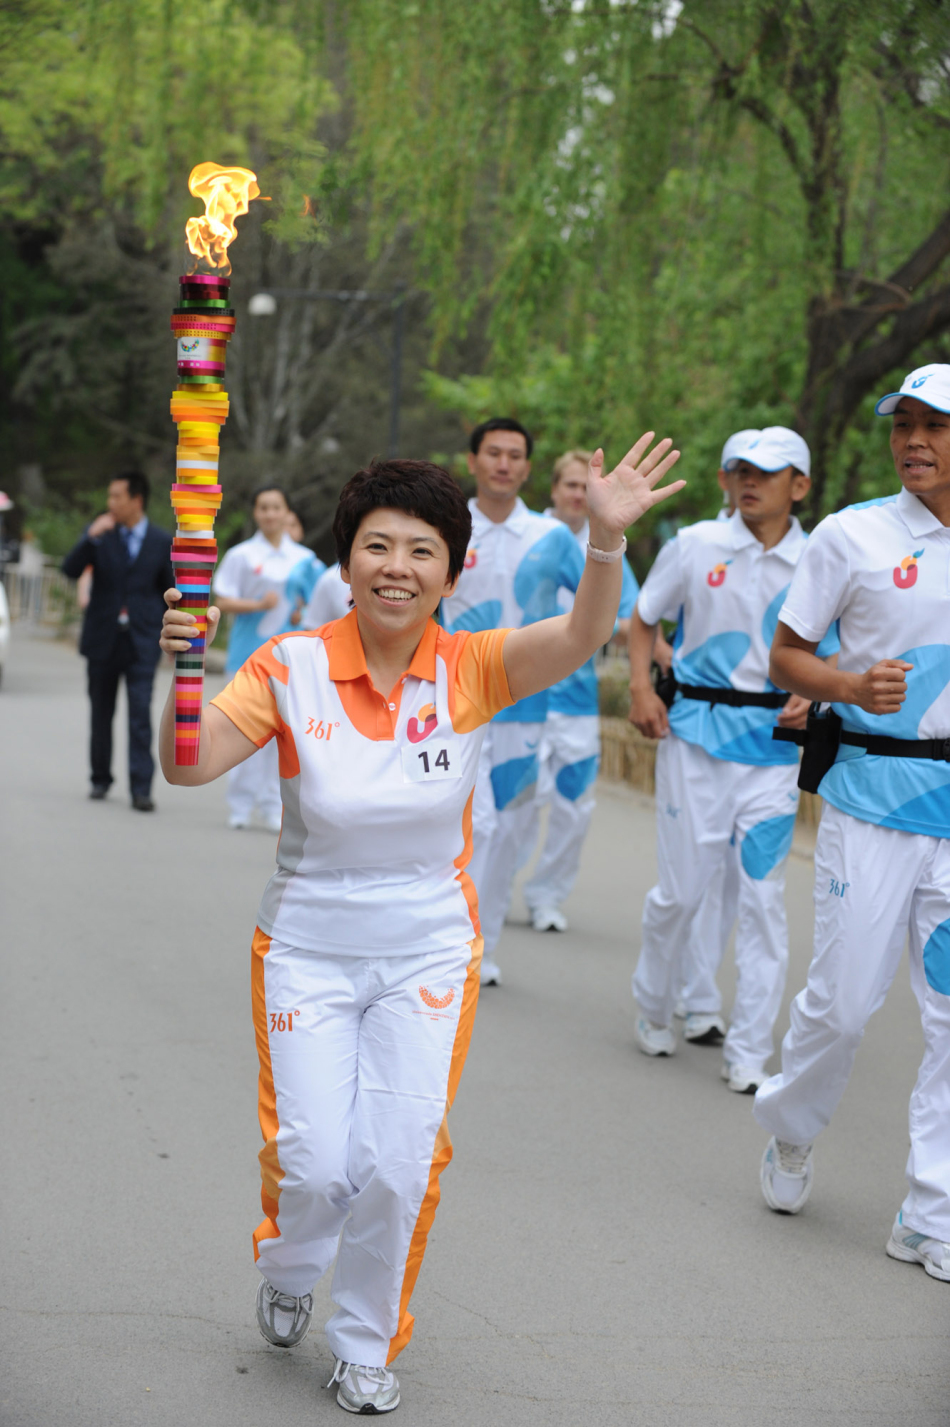 Lancement du relais de la flamme de la 26e Universiade d'été de Shenzhen(4)